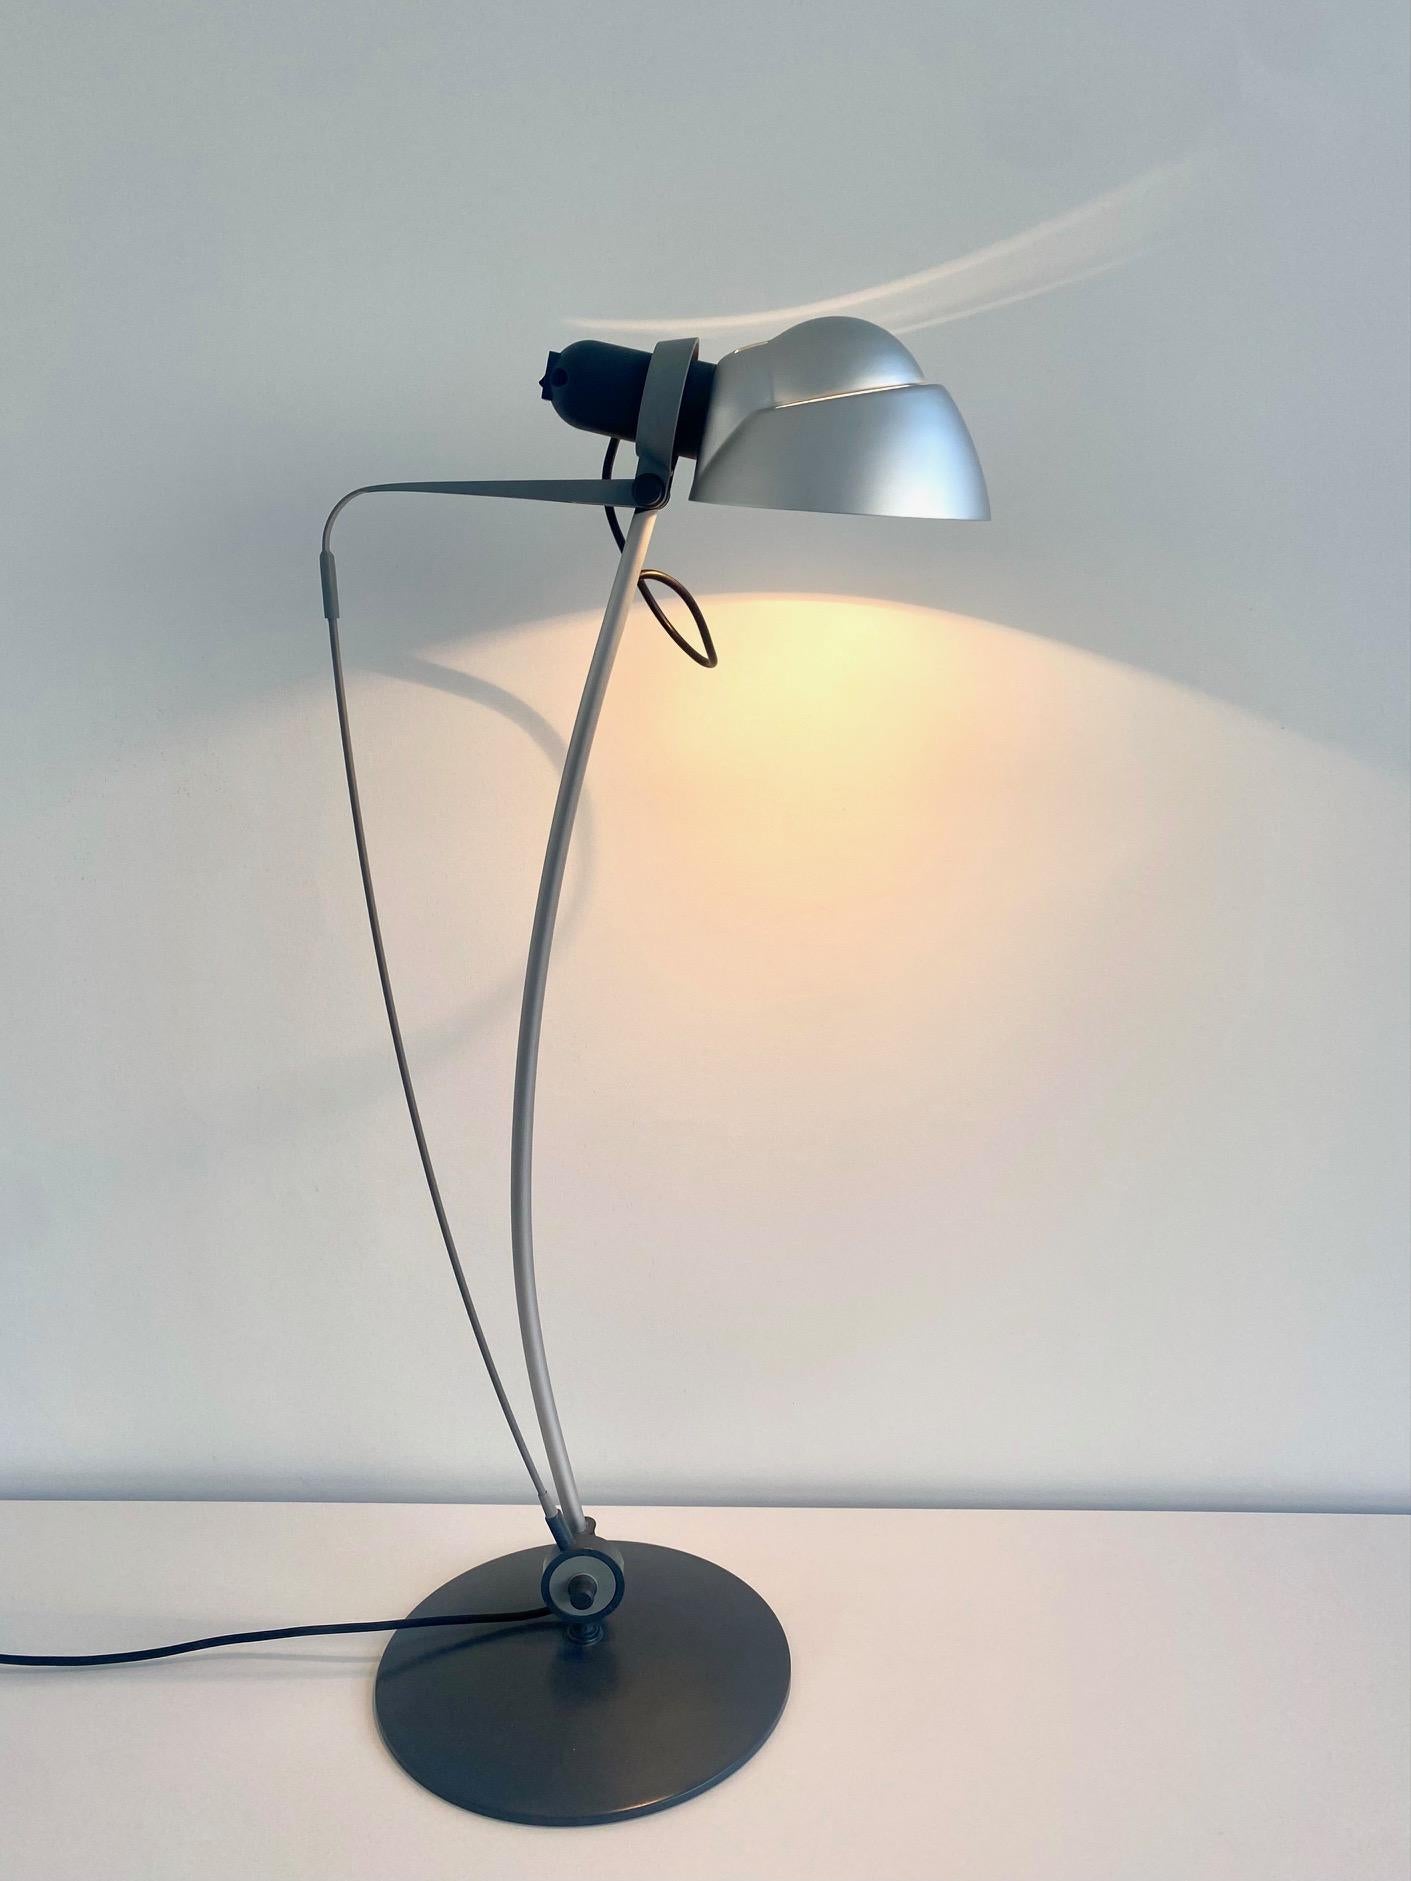 Lampe de bureau Sini de Rene Kemna pour Sirrah, Italie, années 1980.

La tension de la forme de cette lampe de bureau est magnifique. L'arc maintient la lampe dans la bonne position.

La lampe est en très bon état de fonctionnement.